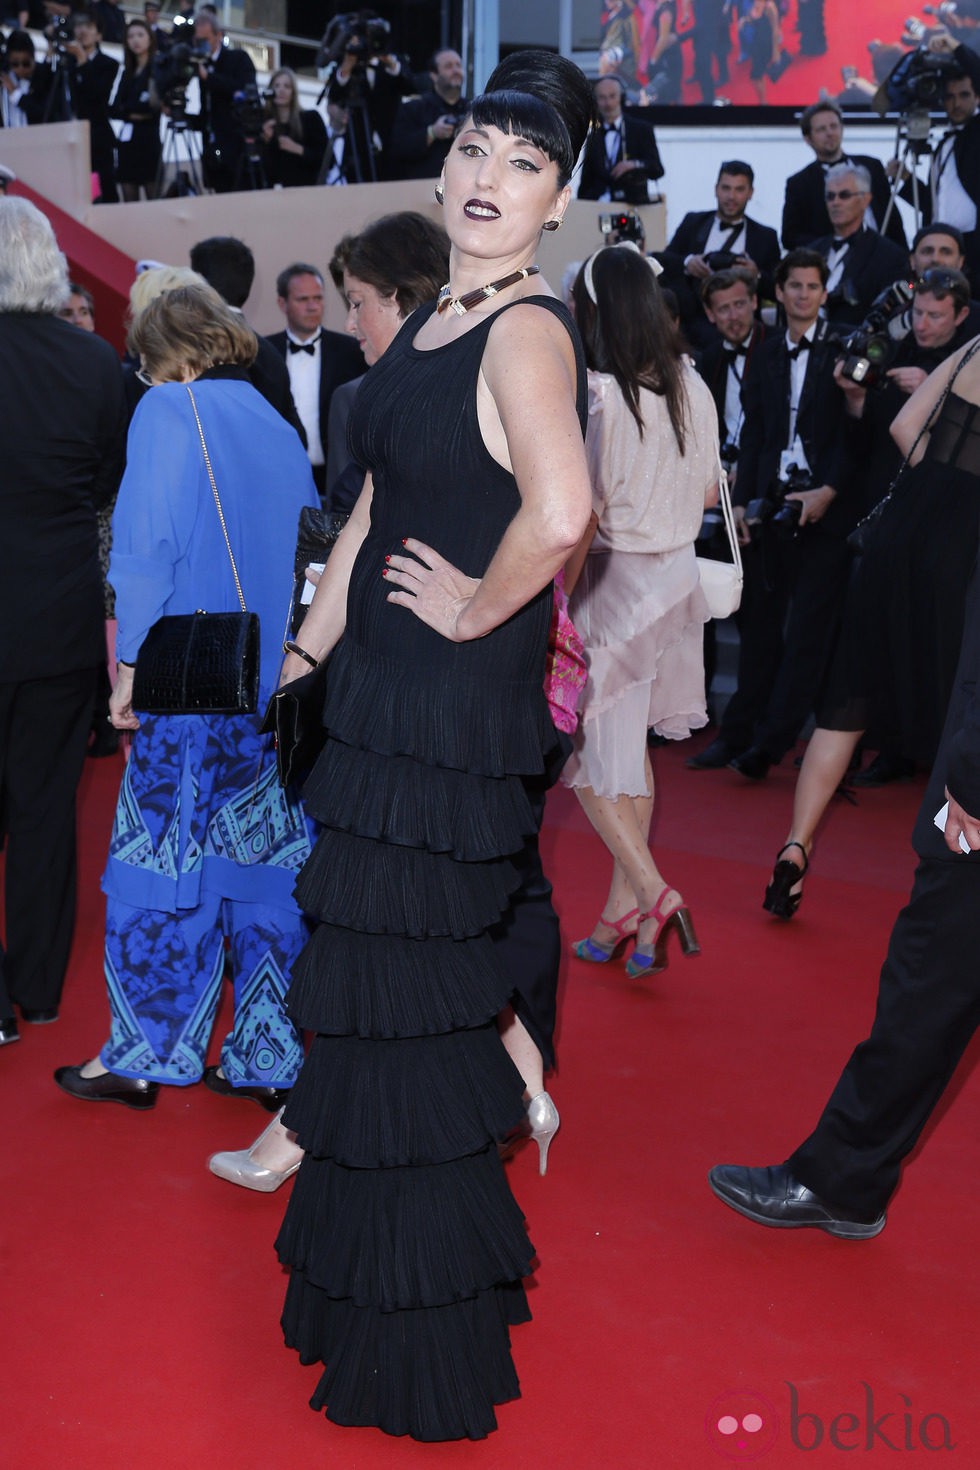 Rossy de Palma en la ceremonia de clausura de Cannes 2013